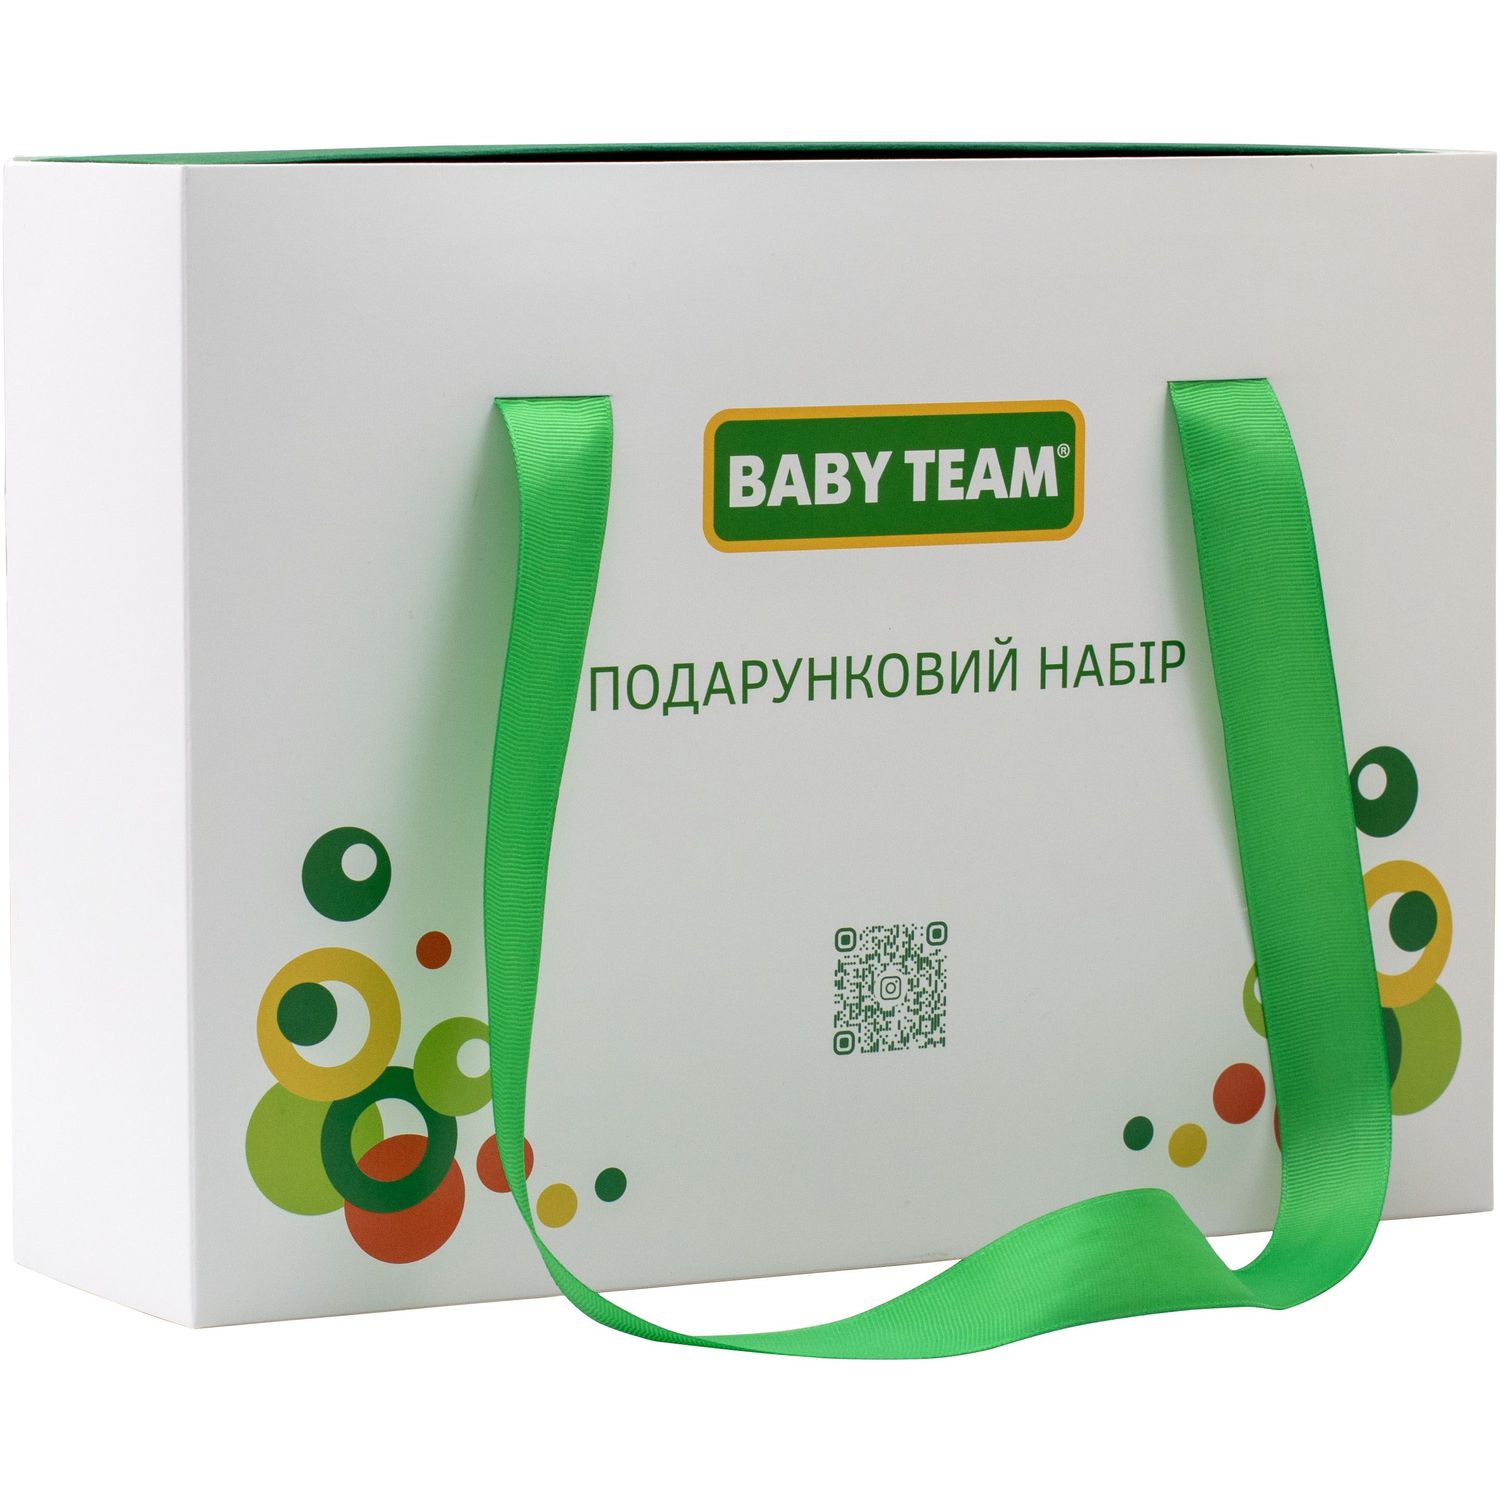 Подарунковий набір Baby team (0720) - фото 2